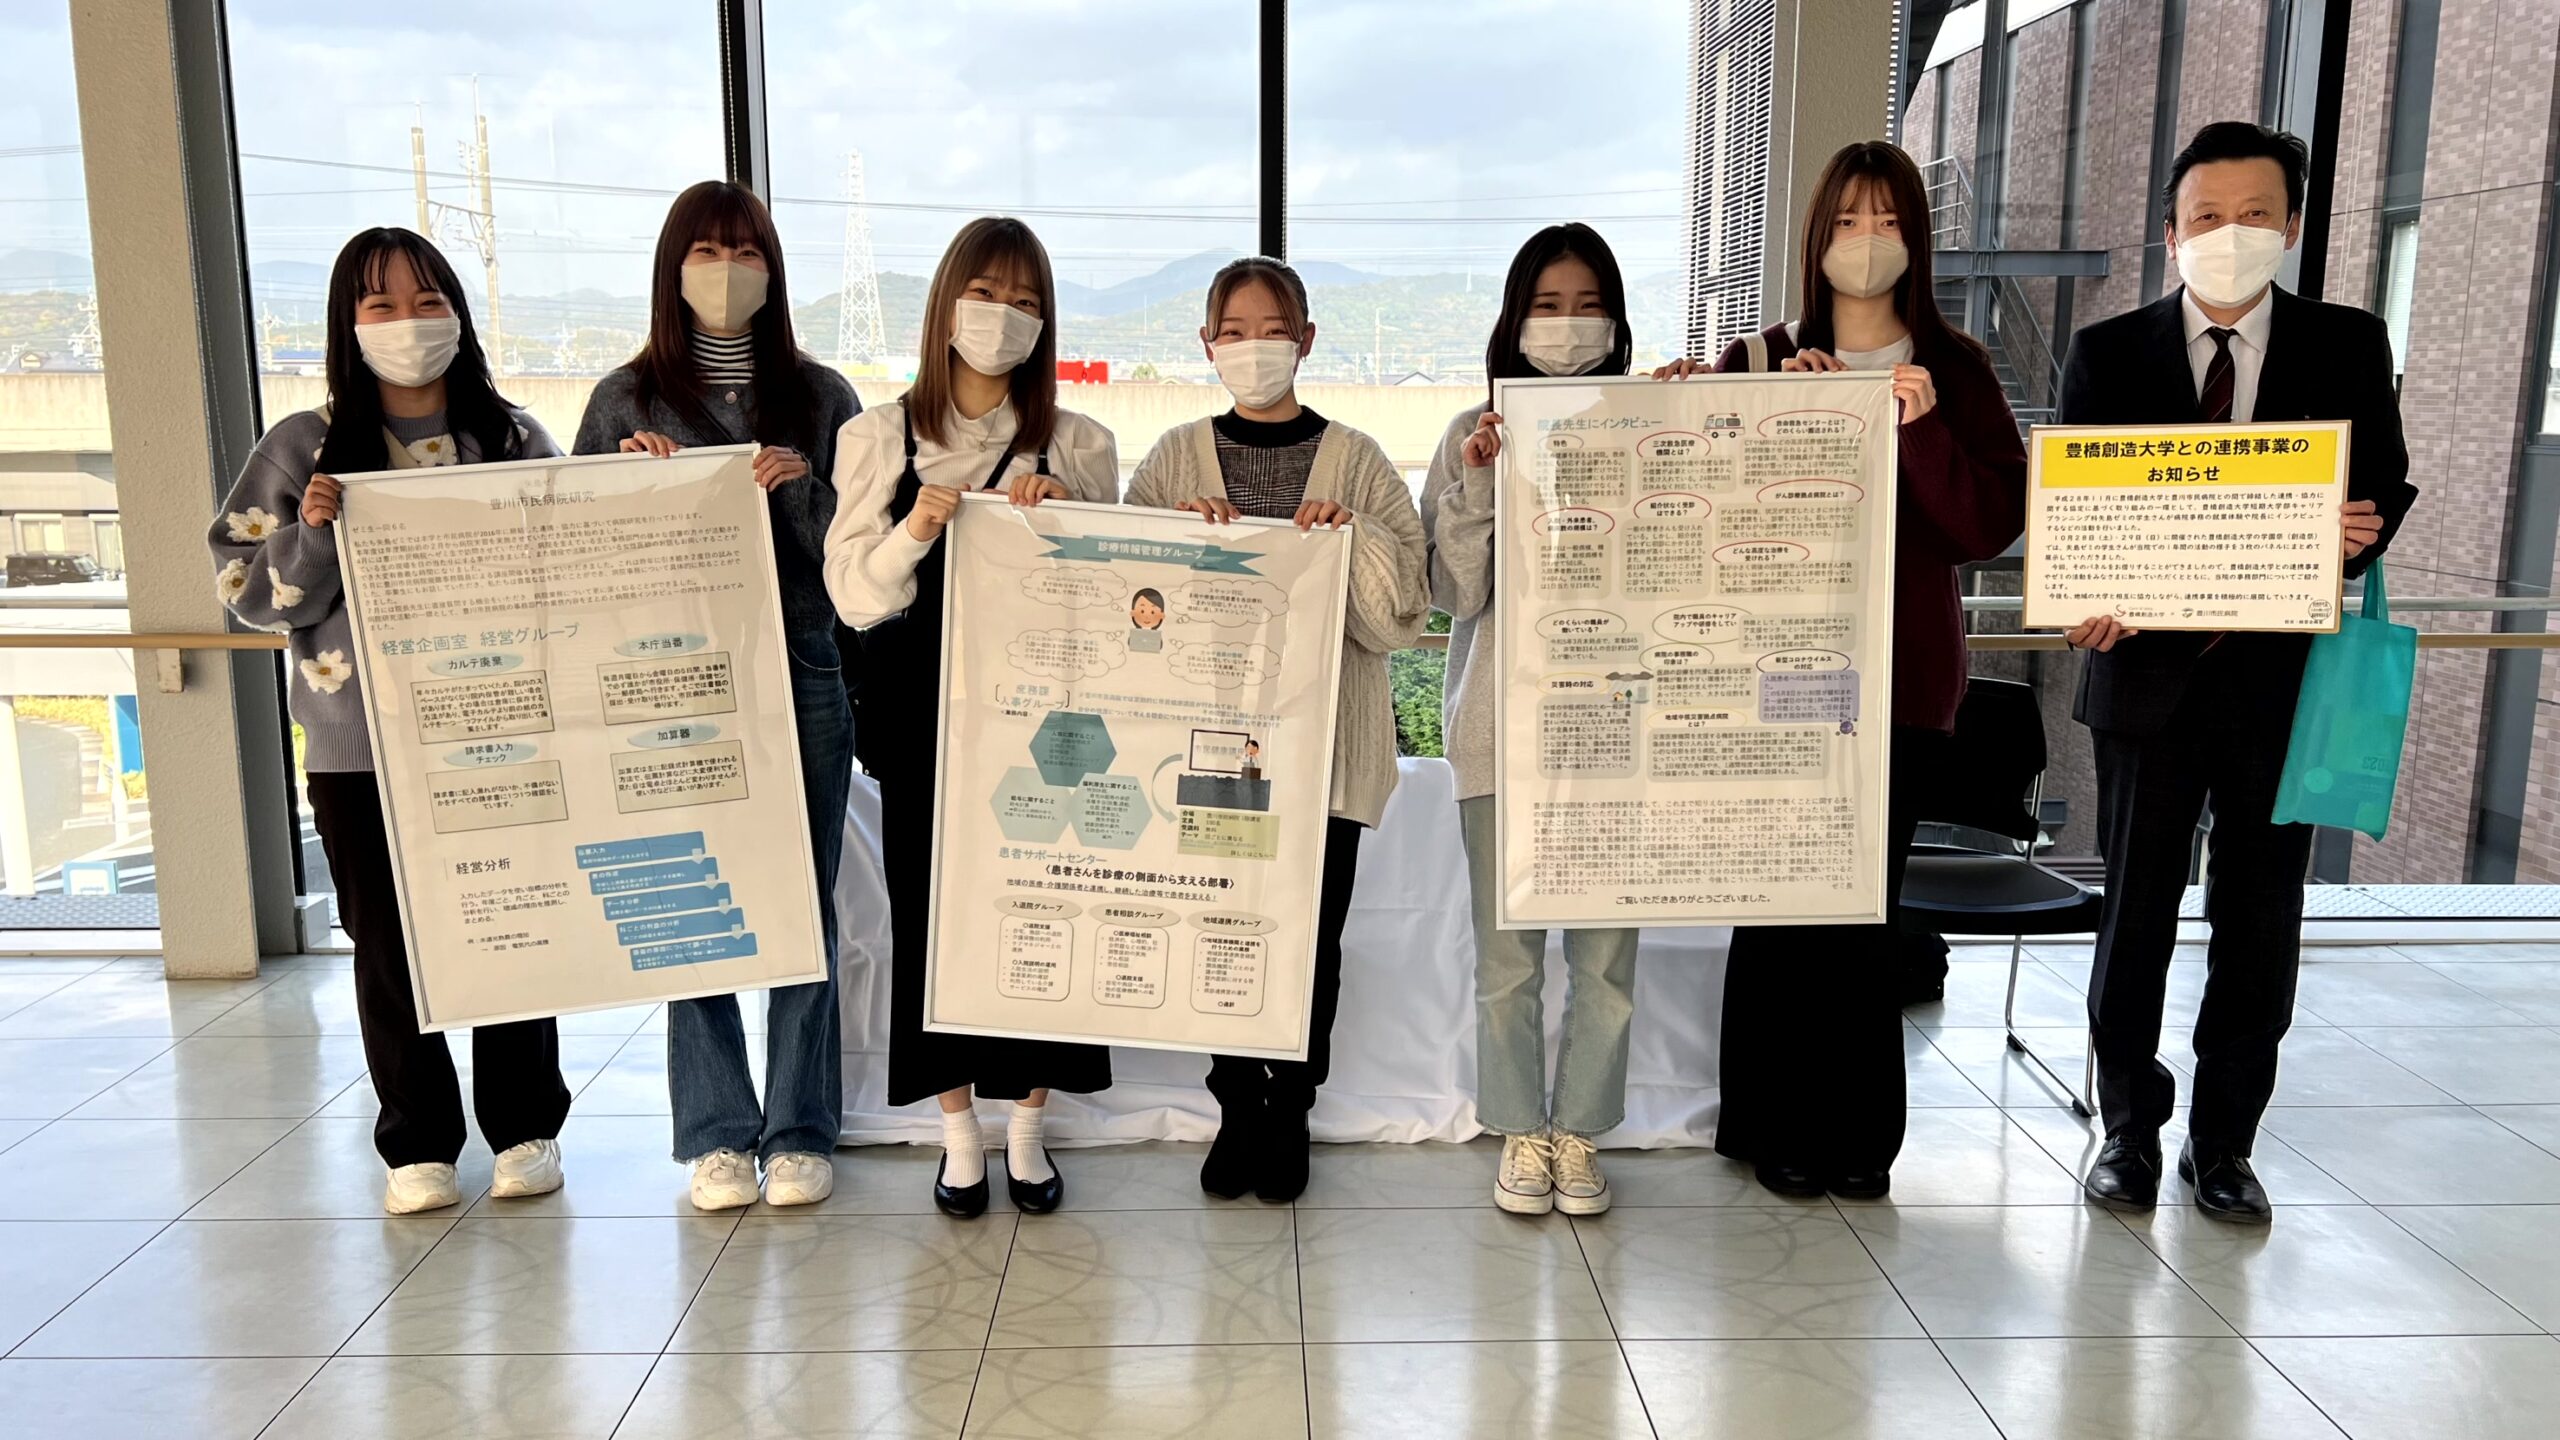 連携先の豊川病院を紹介するパネル展を開催(キャリアプランニング科)